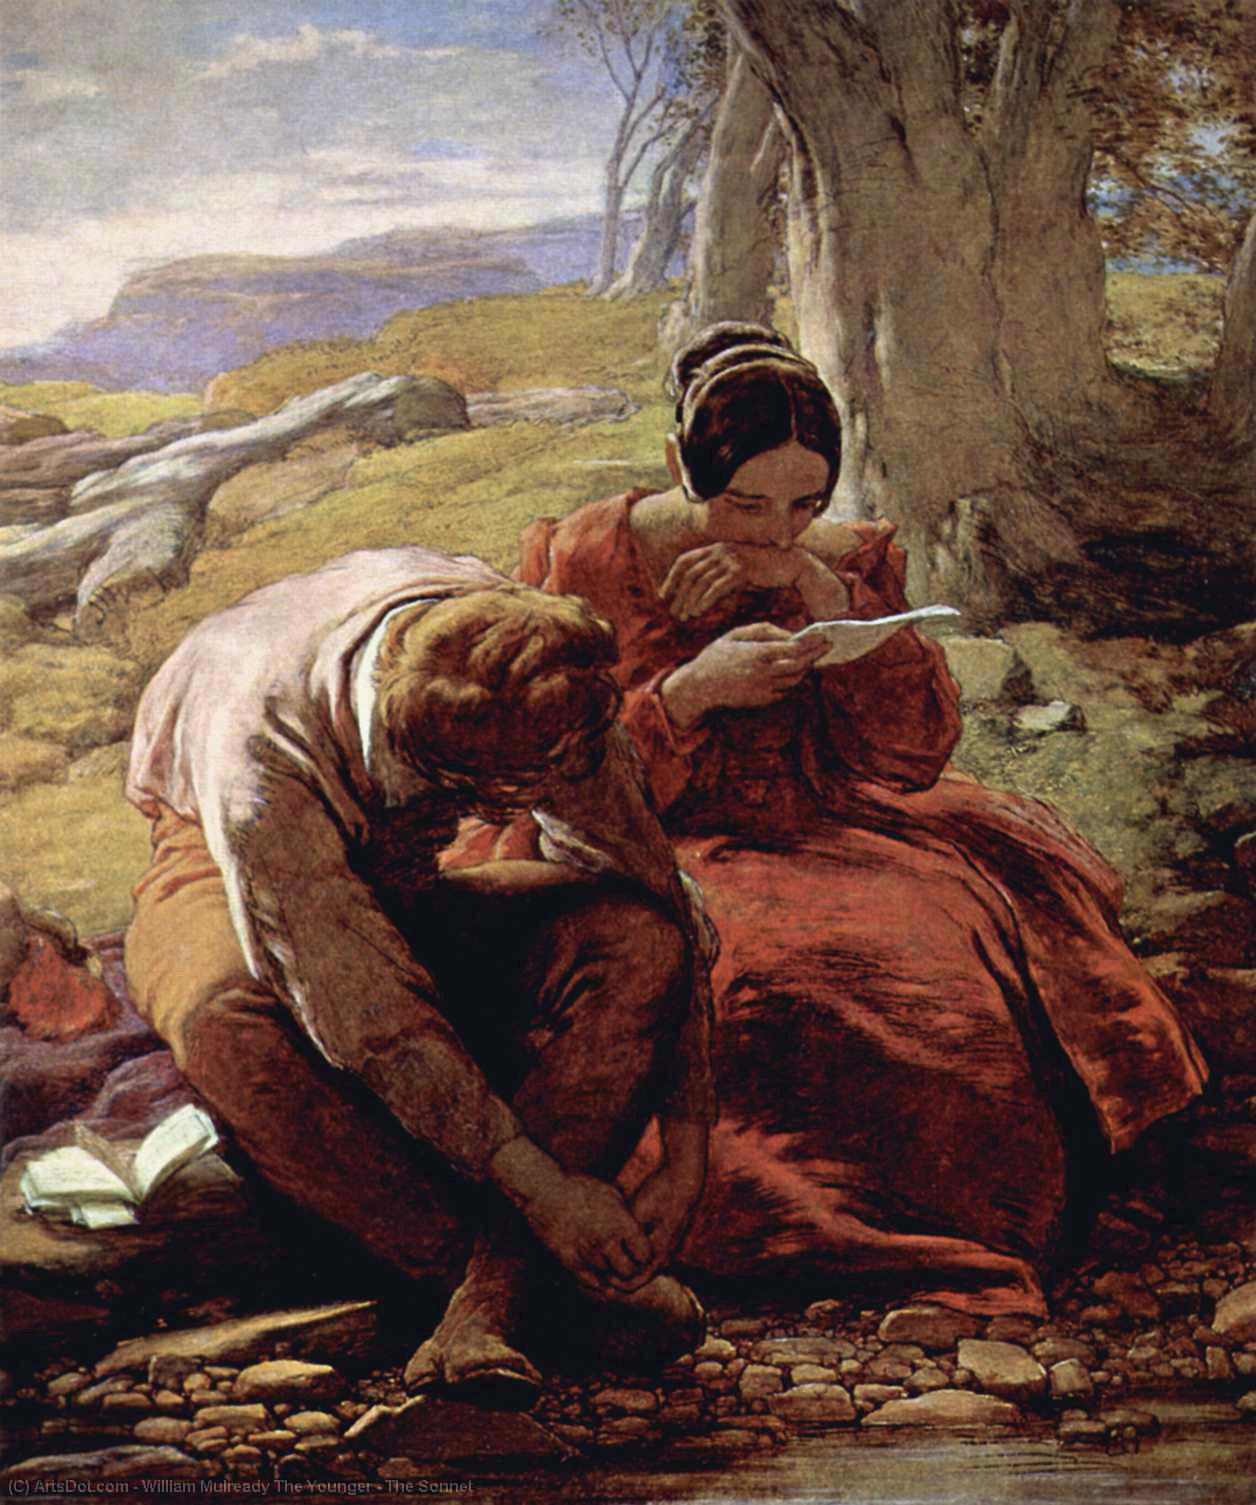 WikiOO.org - אנציקלופדיה לאמנויות יפות - ציור, יצירות אמנות William Mulready The Younger - The Sonnet